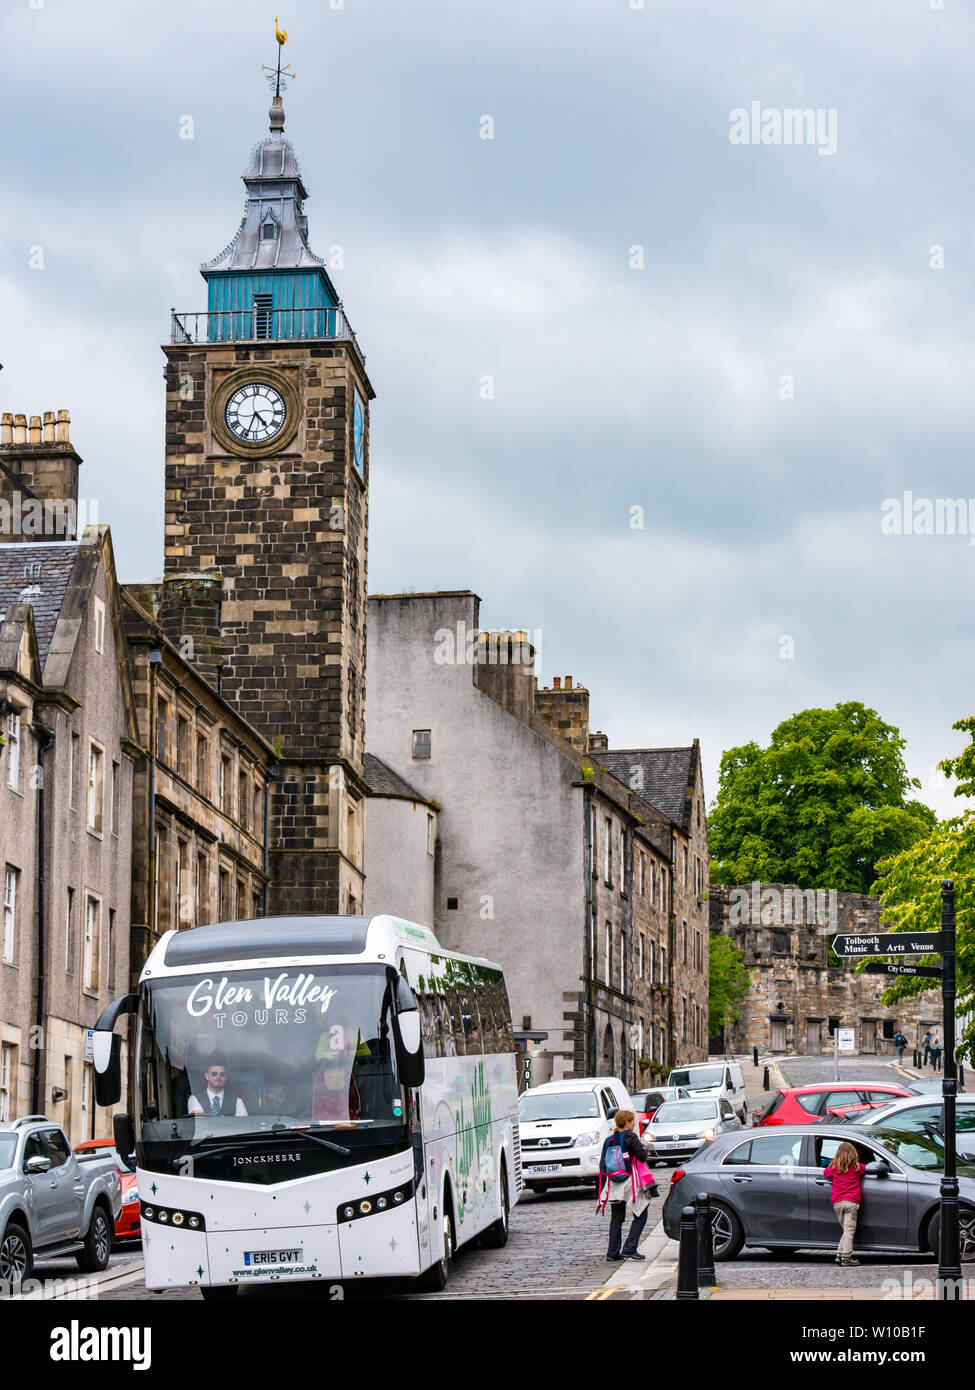 Pullman turistico la guida sulle strette vecchia strada di ciottoli con Tolbooth torre e orologio, Broad Street, Stirling Old Town, Scotland, Regno Unito Foto Stock